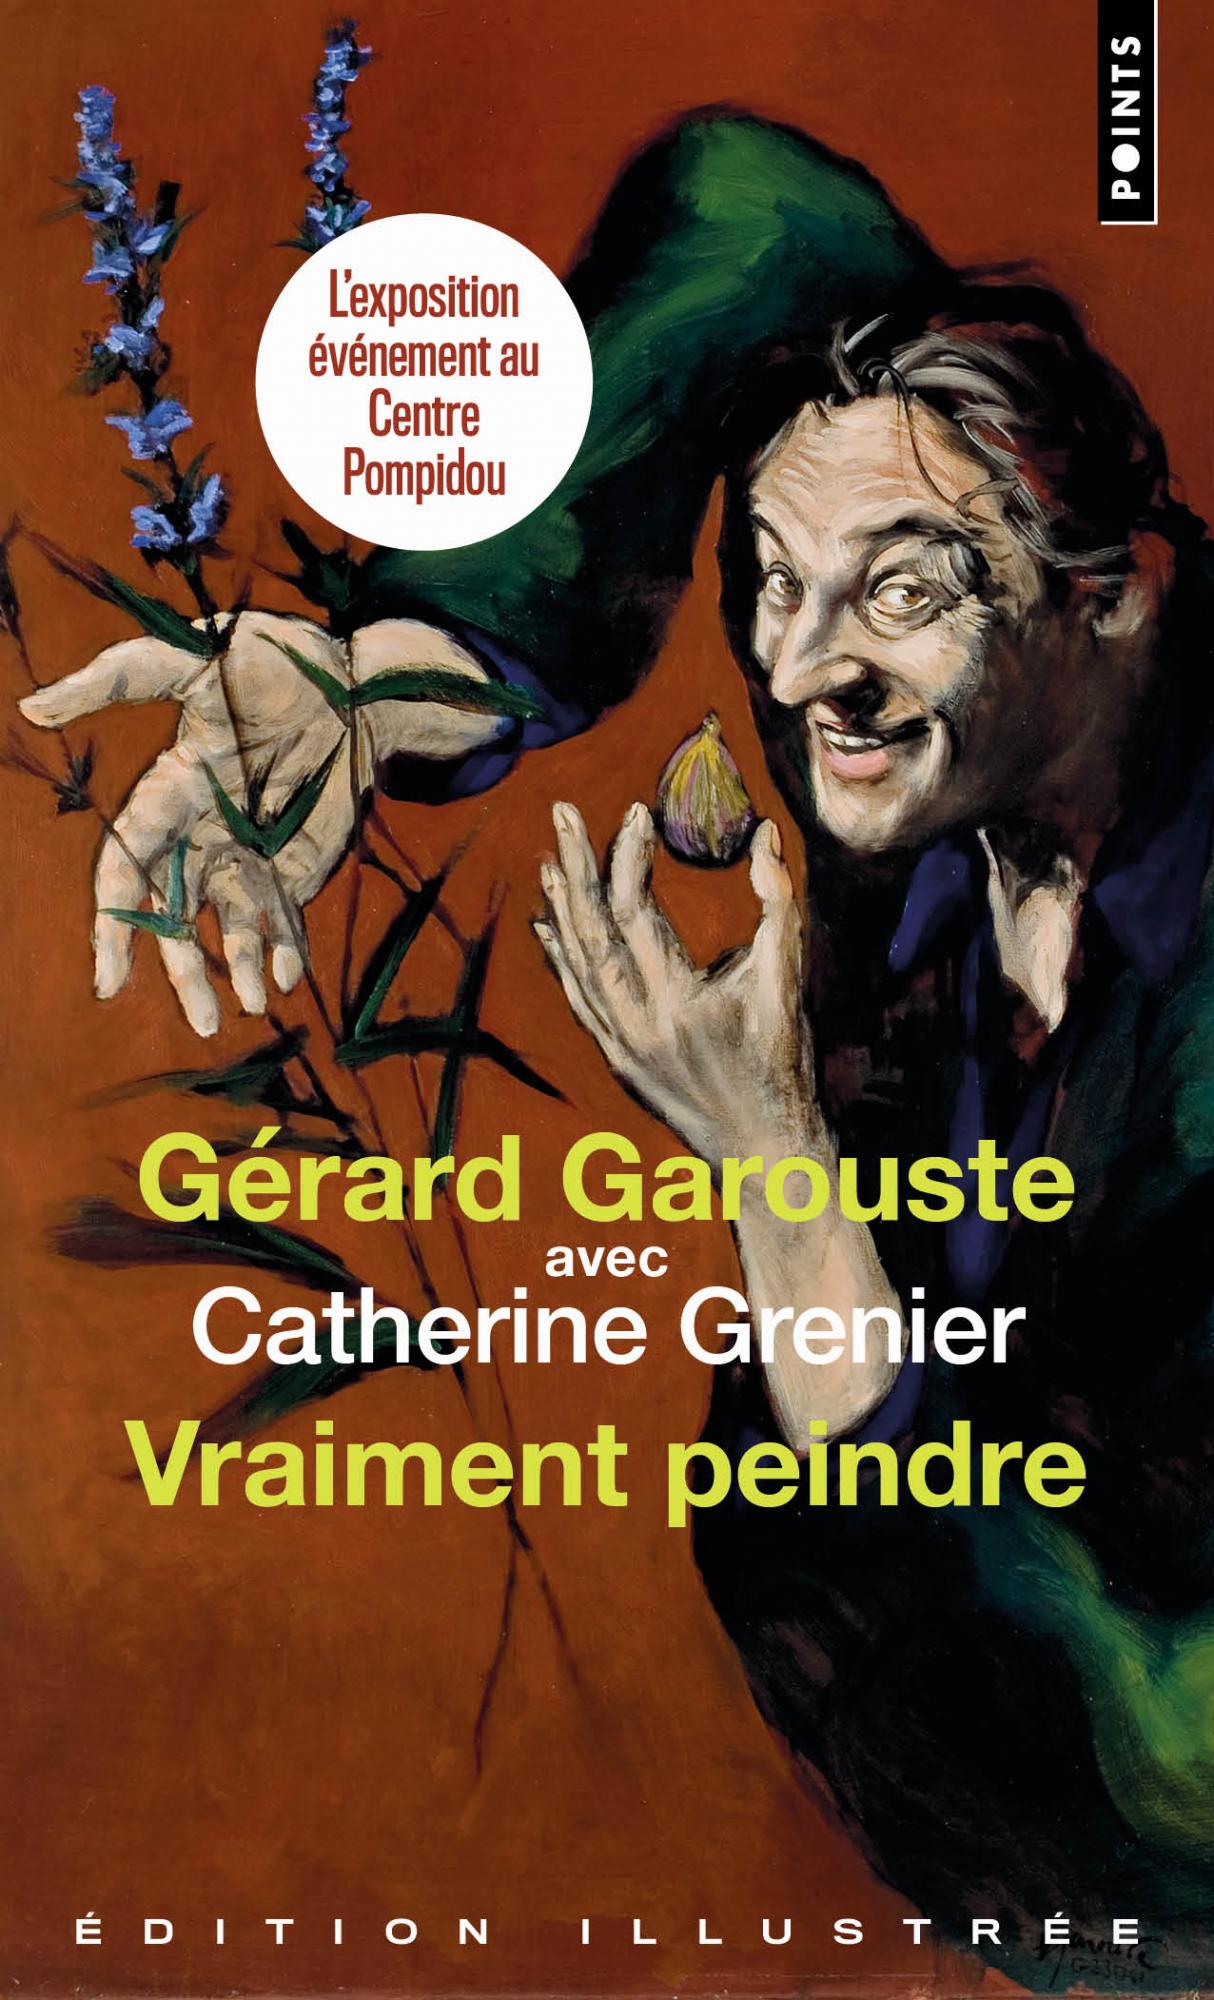 Vraiment peindre (Édition illustrée) - Gérard Garouste avec Catherine Grenier